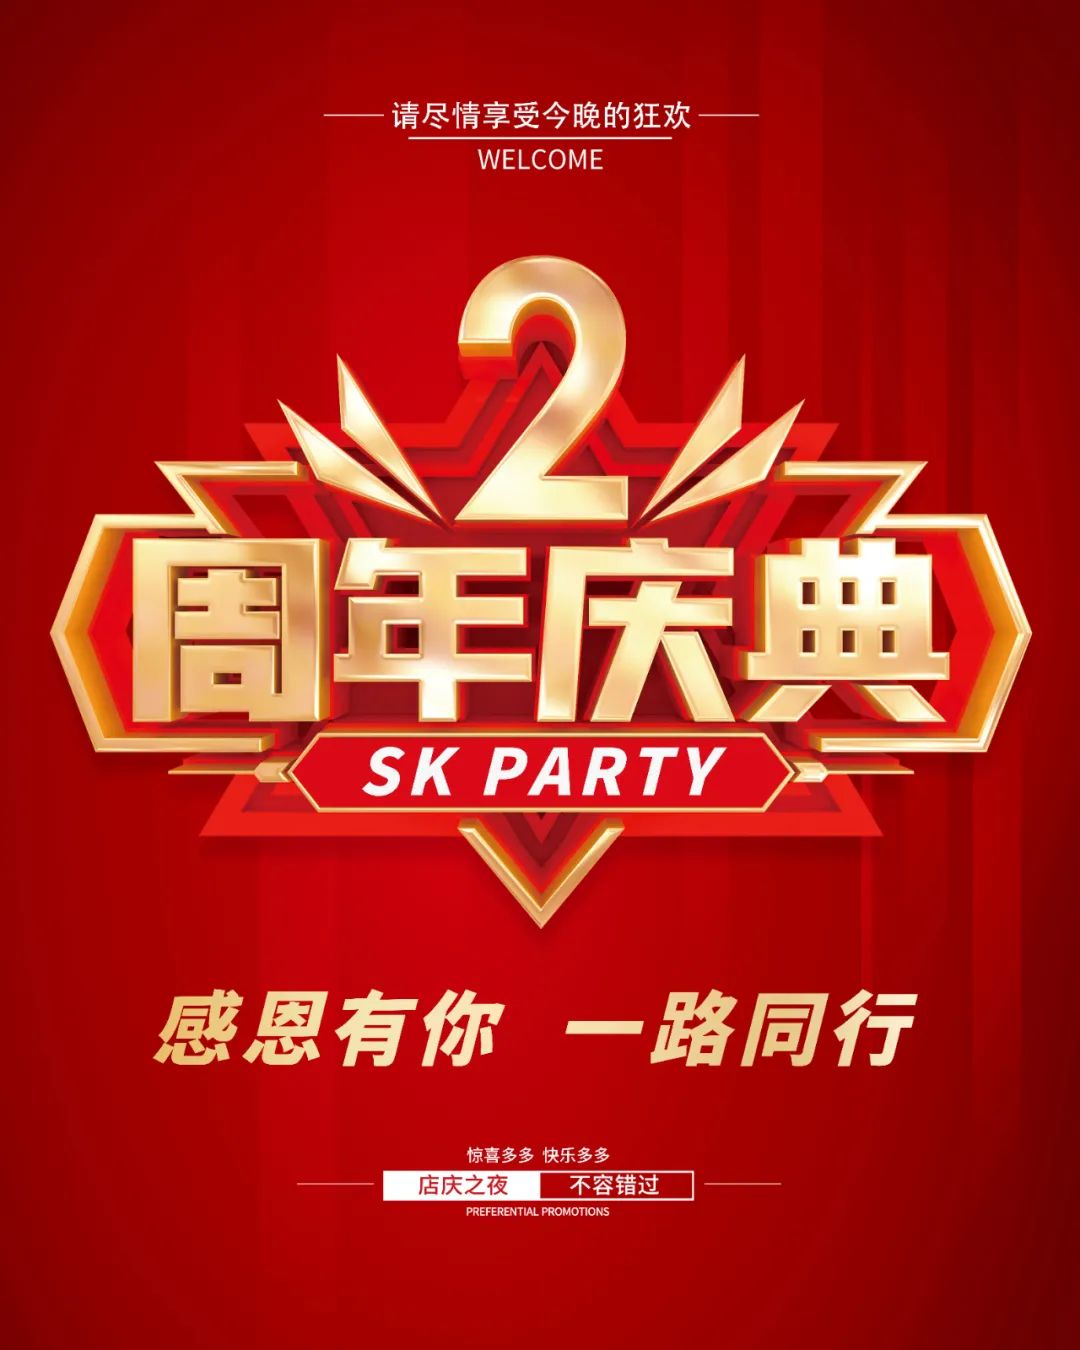 SK PARTY 2周年庆典预告丨与你共迎辉煌未来-富川SK酒吧/SK PARTY CLUB